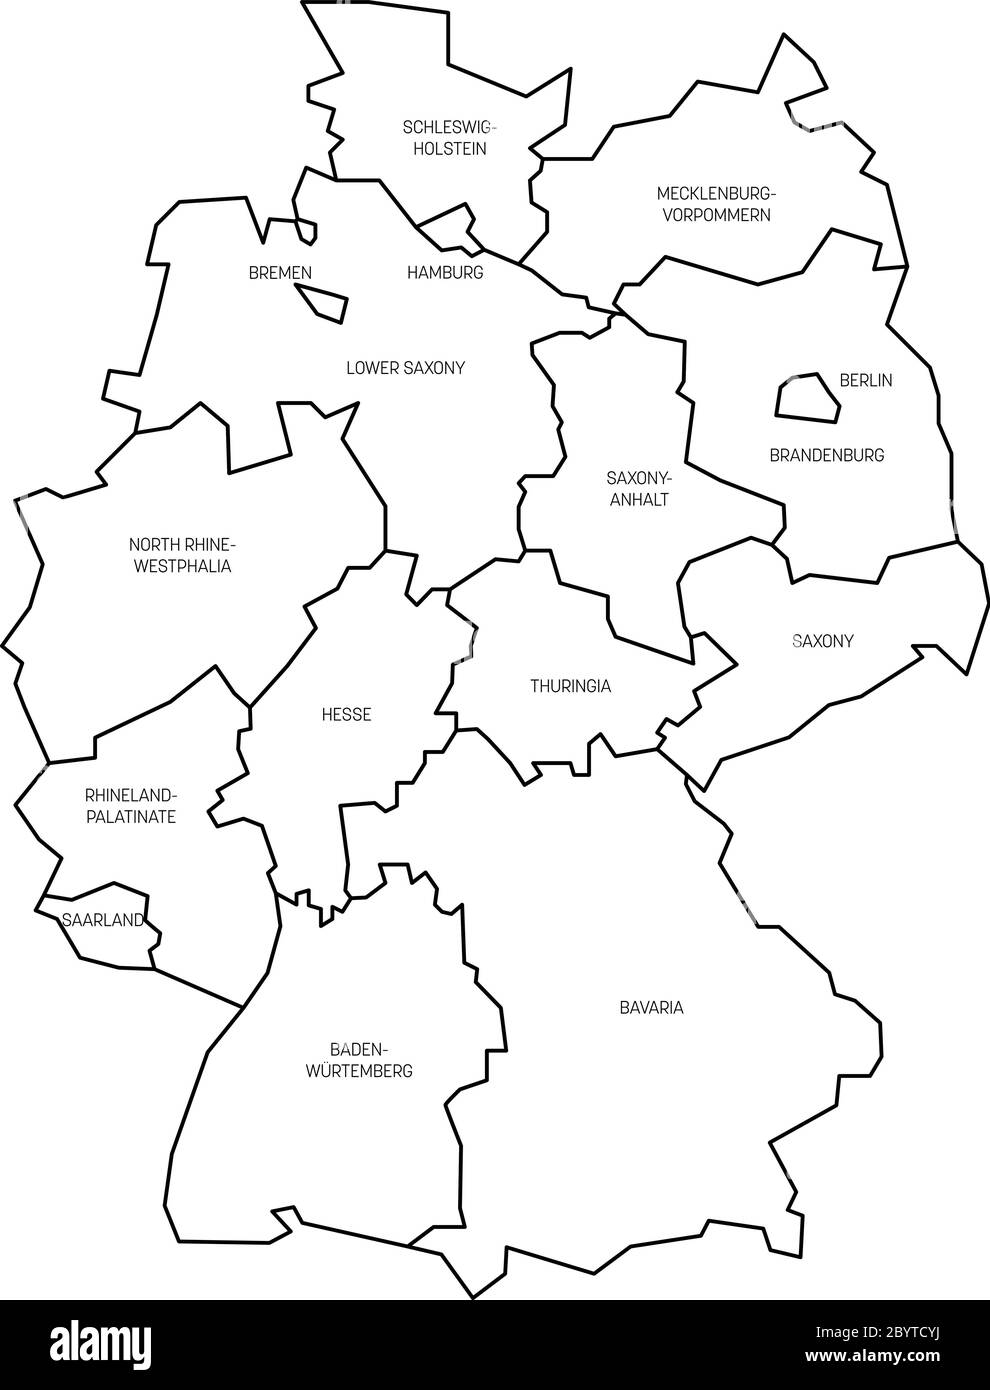 Karte von Deutschland aufgeteilt in 13 Bundesländer und 3 Stadtstaaten - Berlin, Bremen und Hamburg, Europa. Einfache flache, weiße Vektorkarte mit schwarzen Umrissen und Beschriftungen. Stock Vektor